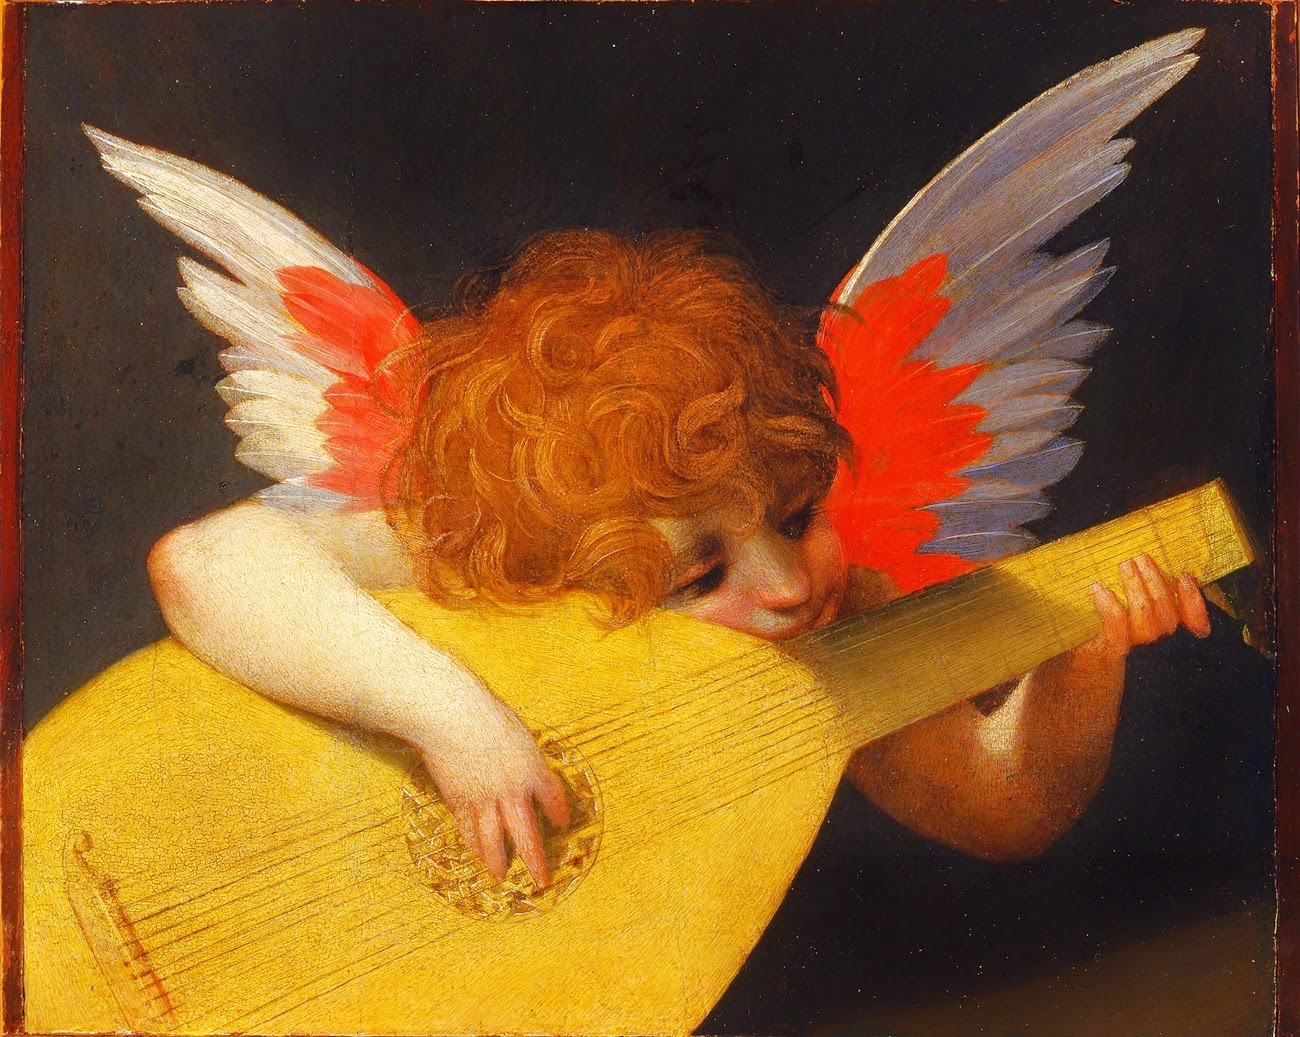 Rosso+Fiorentino+-+Musician+Angel,+1518+1